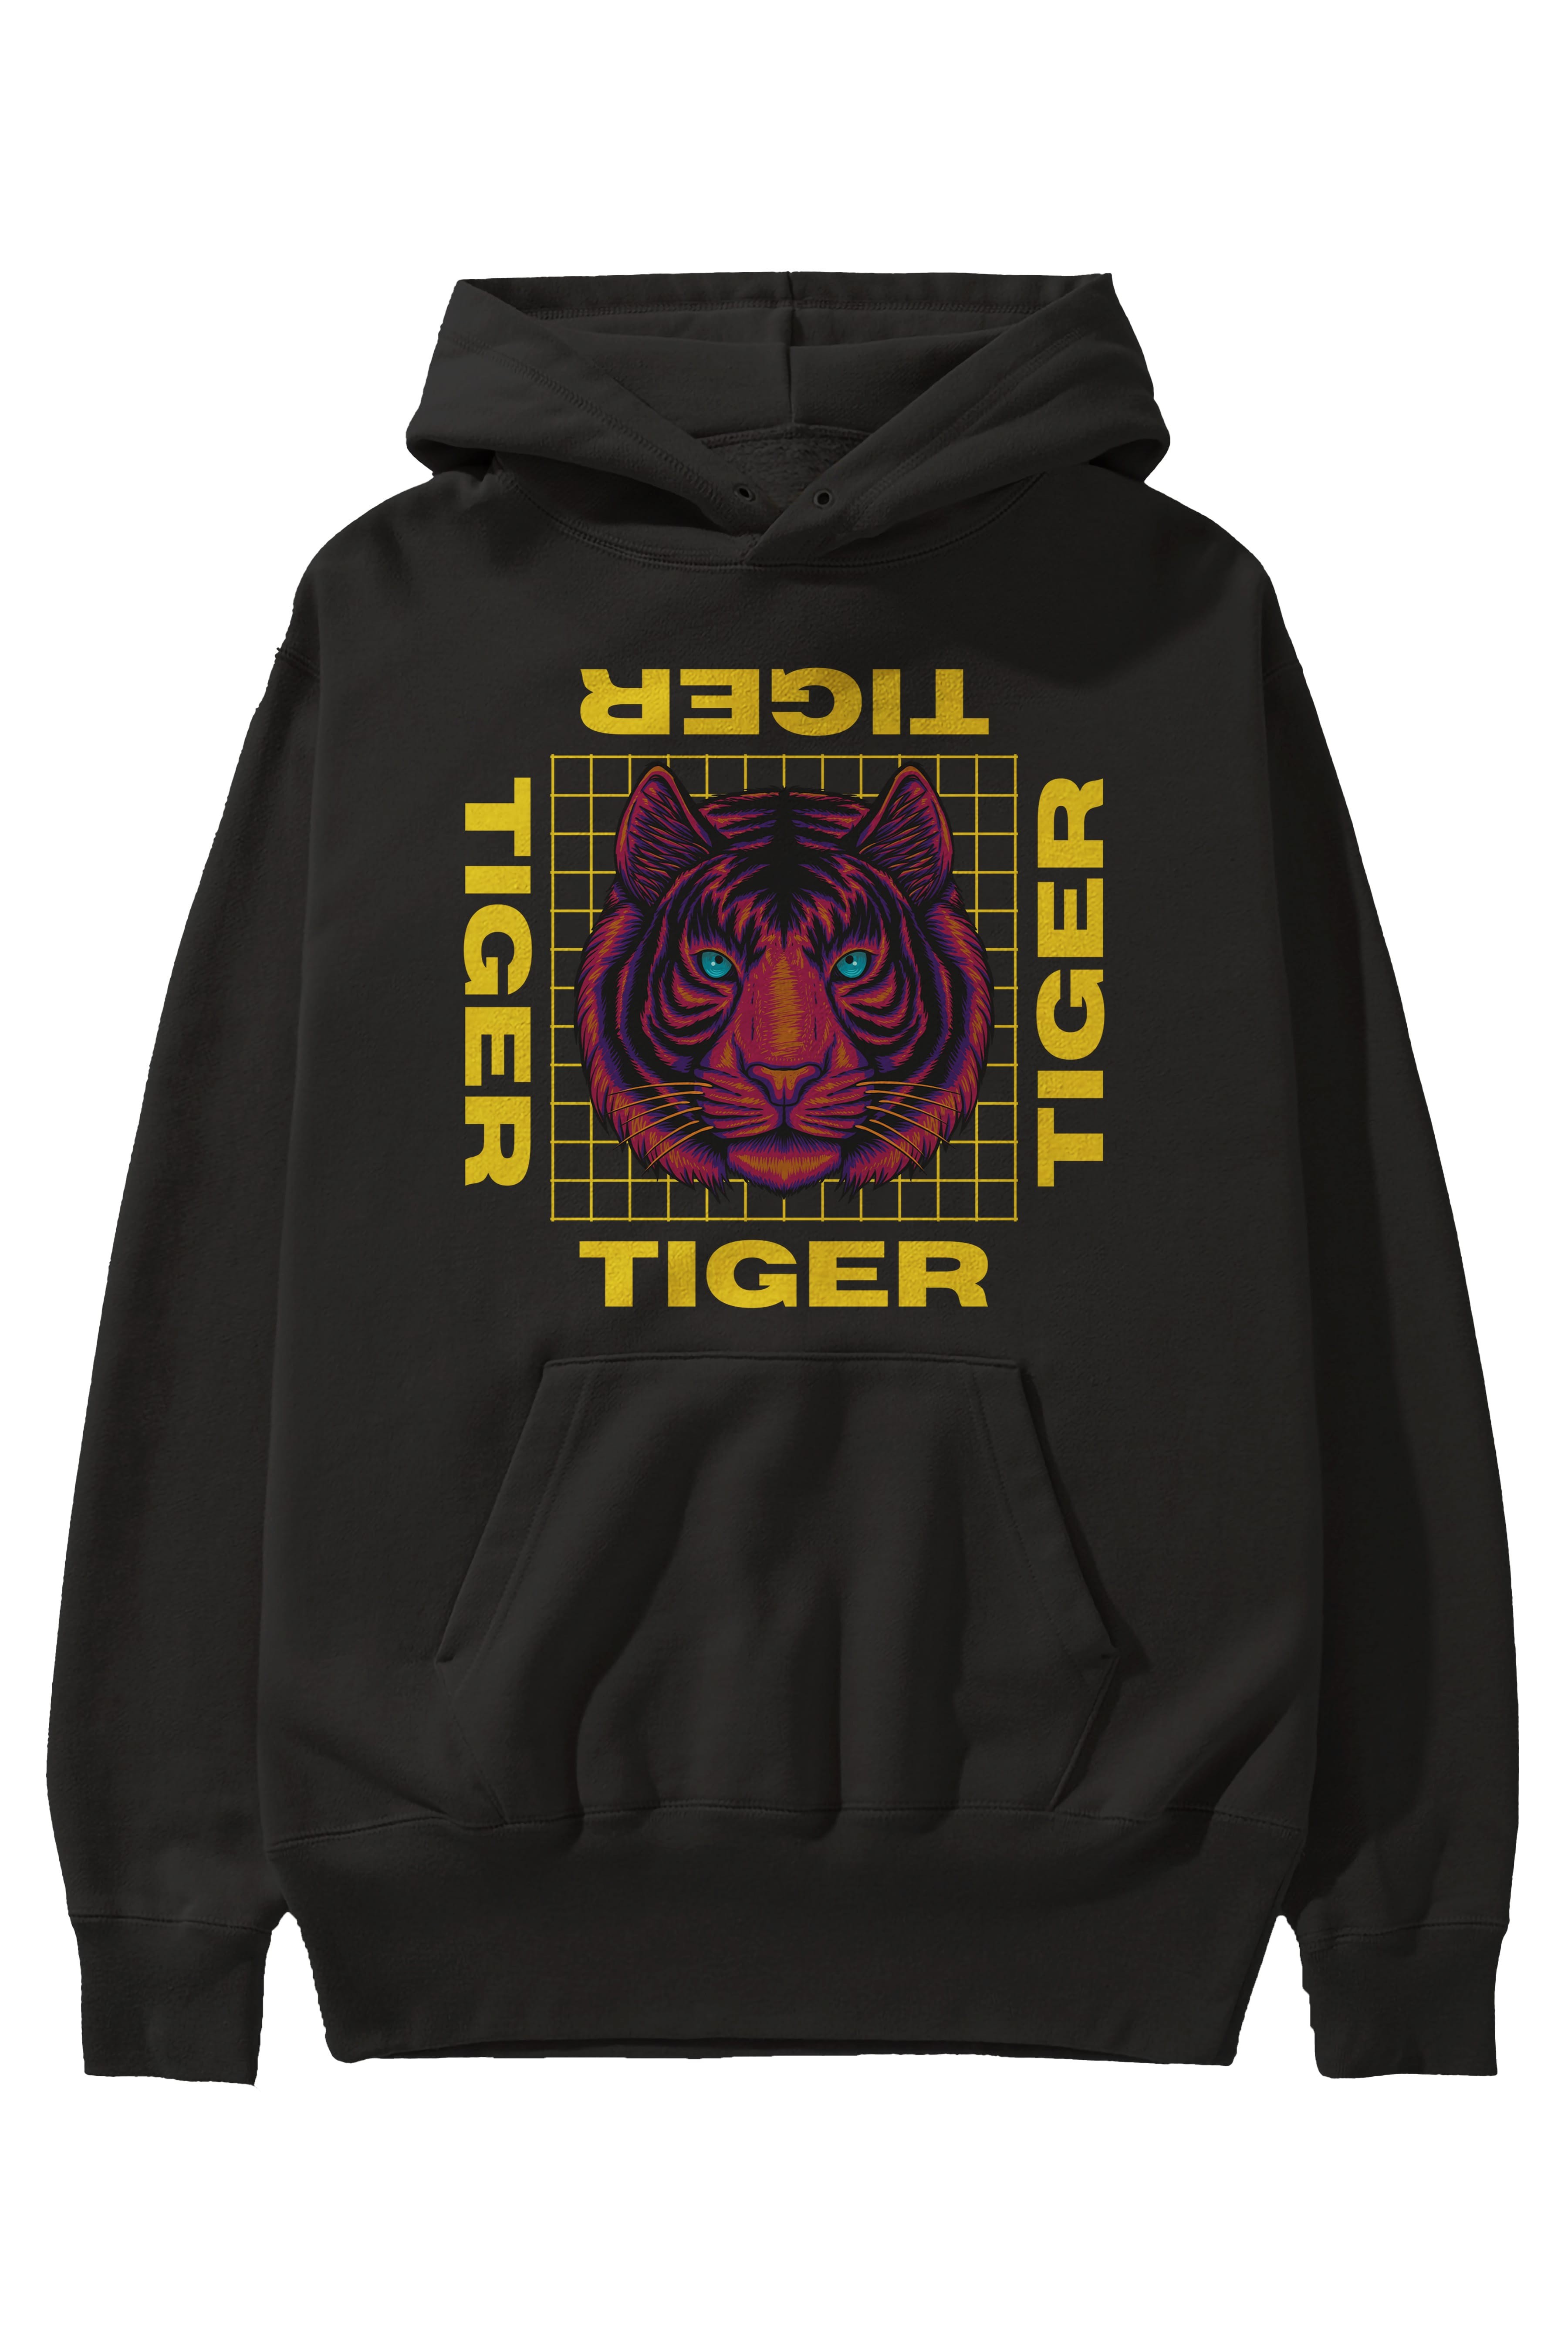 Tiger Yazılı Streetwear Ön Baskılı Oversize Hoodie Kapüşonlu Sweatshirt Erkek Kadın Unisex